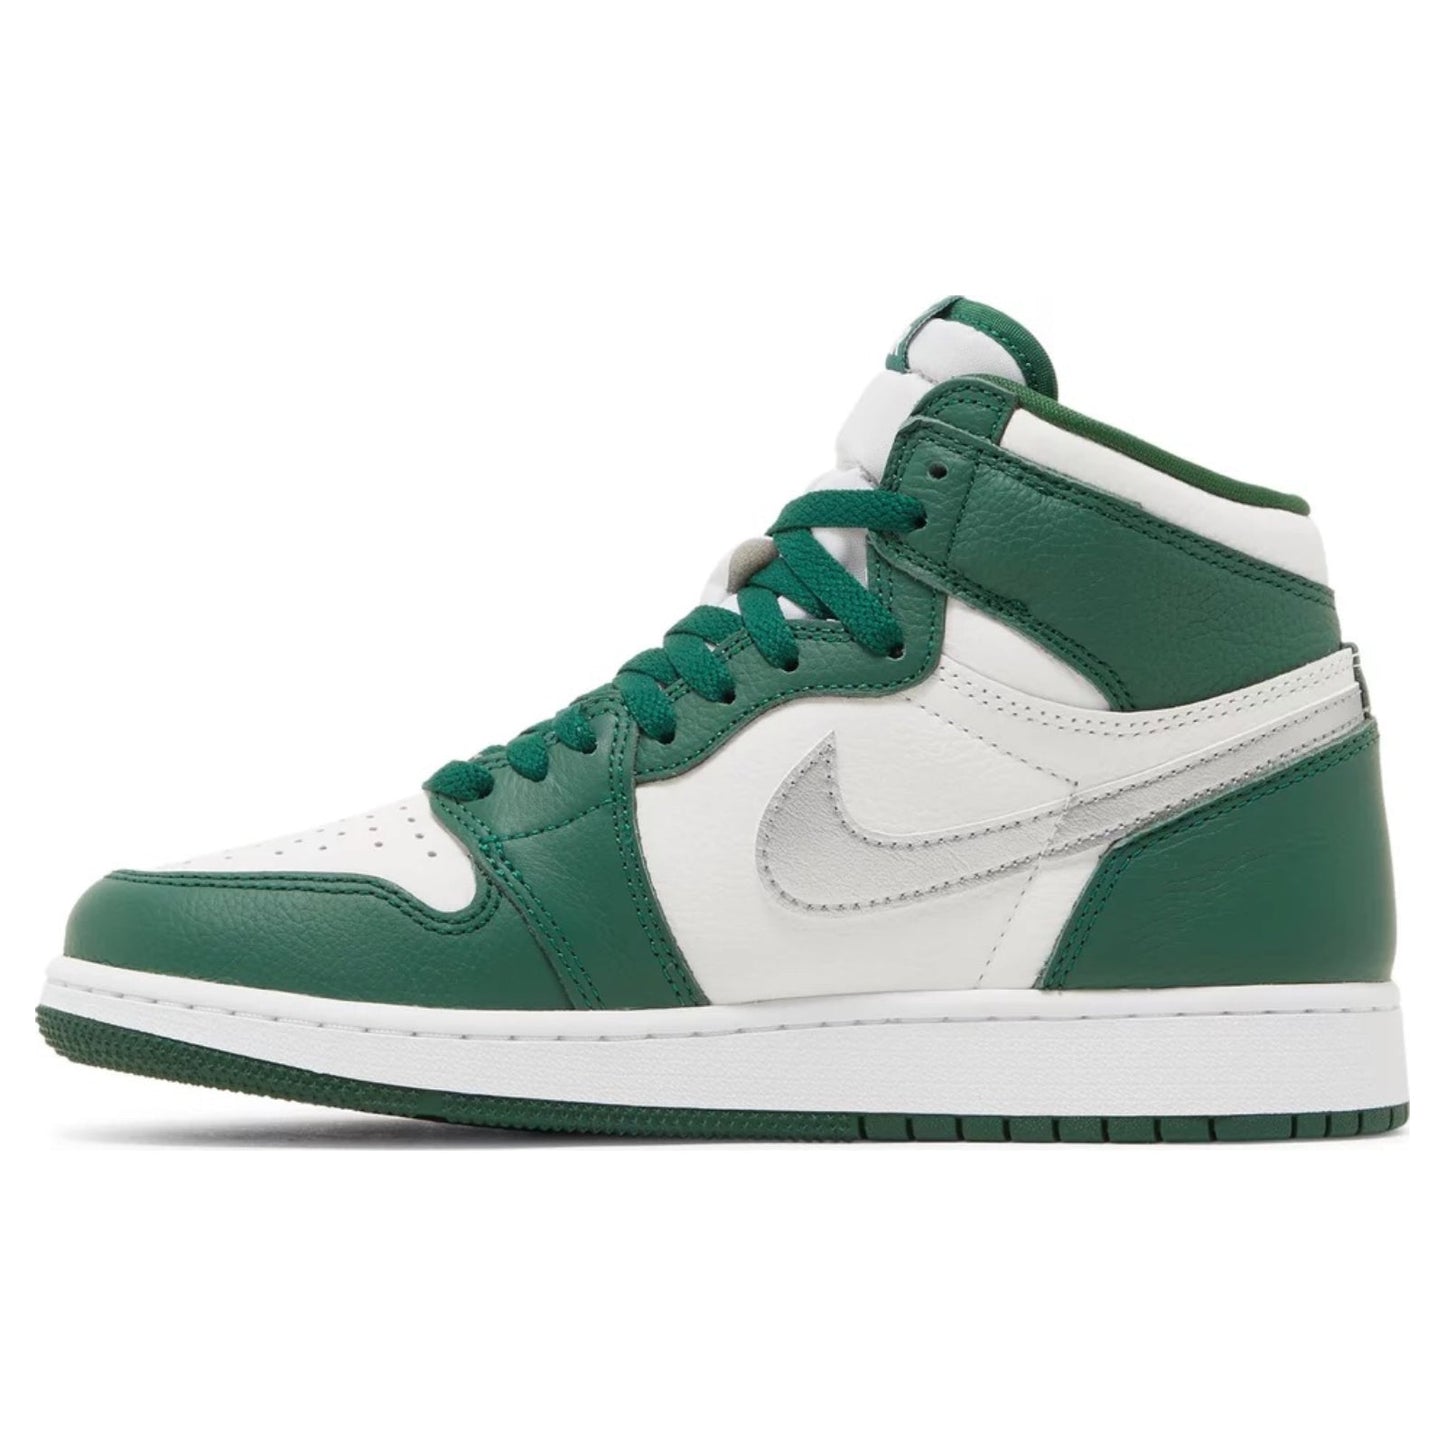 Air Sneakers Jordan inked 11 Retro Low Bright Citrus Bianco (GS), Gorge Green